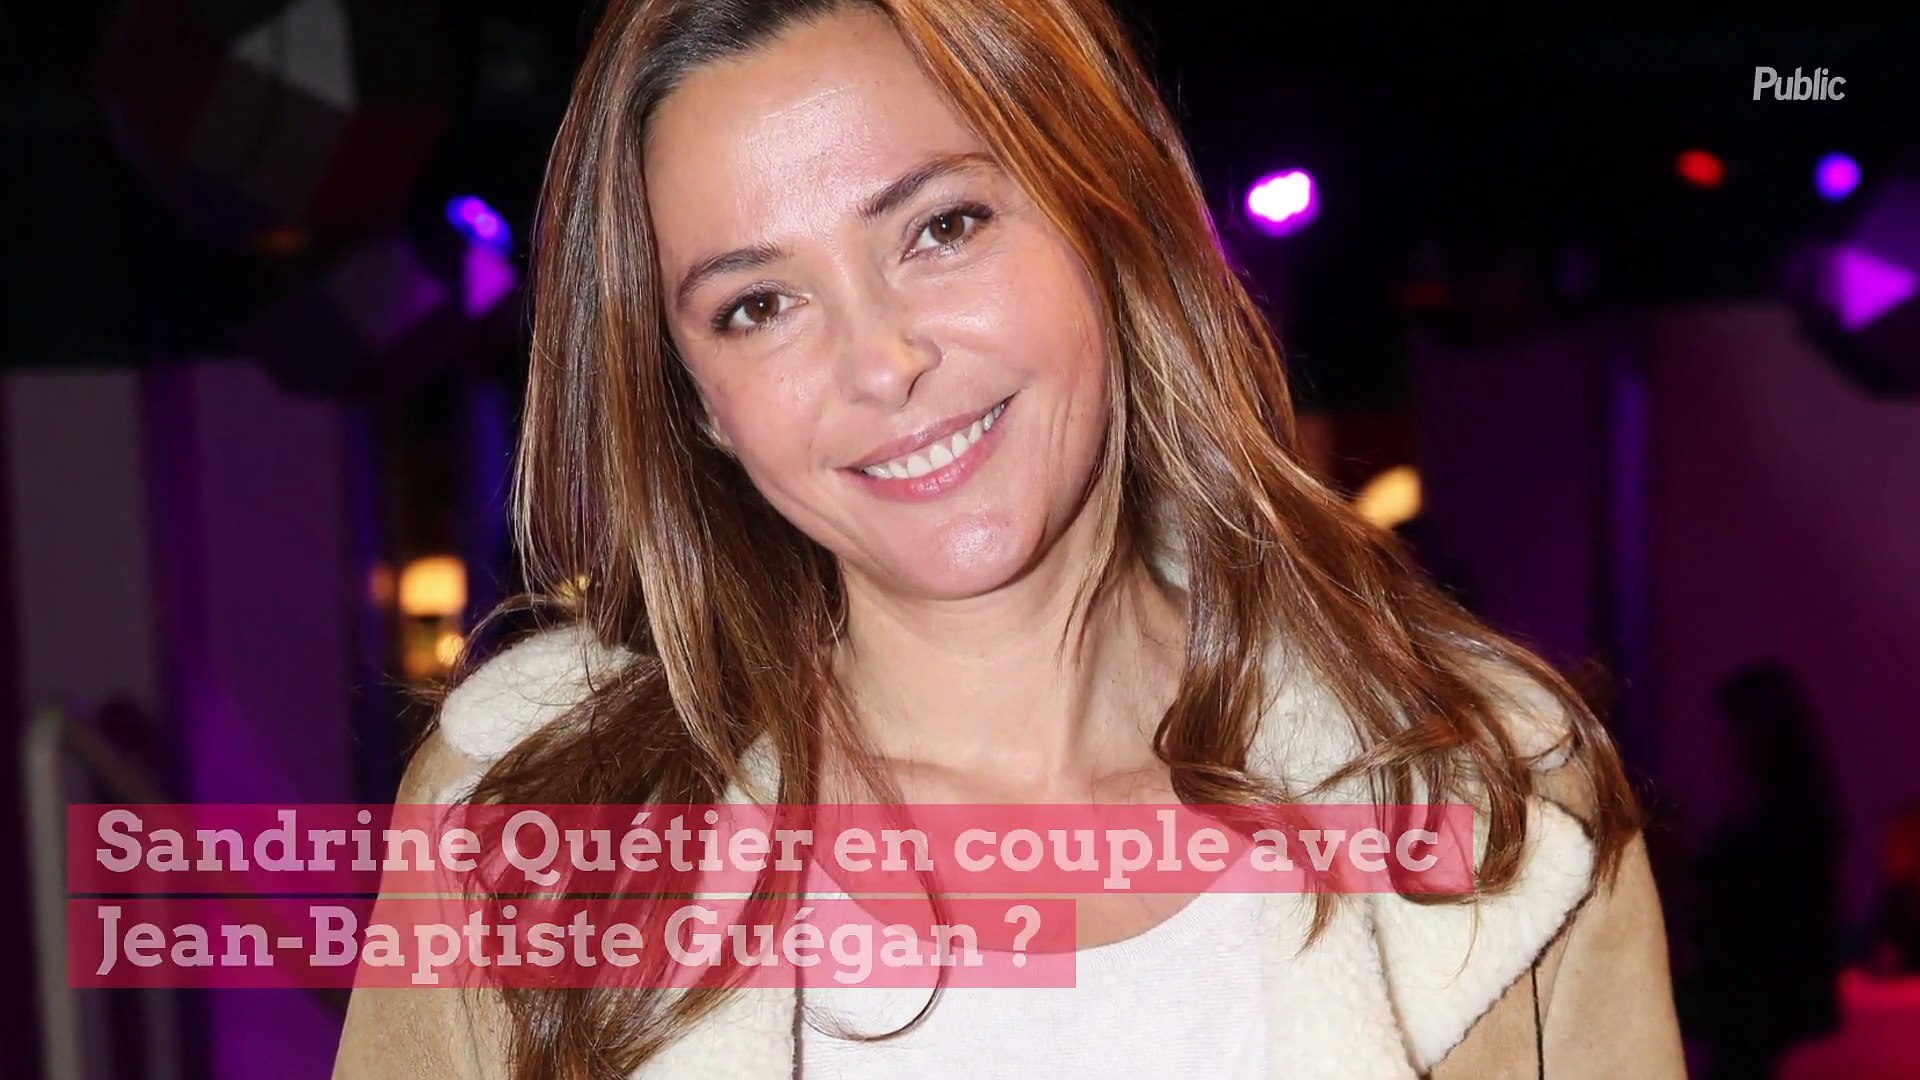 Sandrine Quétier en couple avec Jean-Baptiste Guégan ? Le chanteur parle  enfin ! - Vidéo Dailymotion